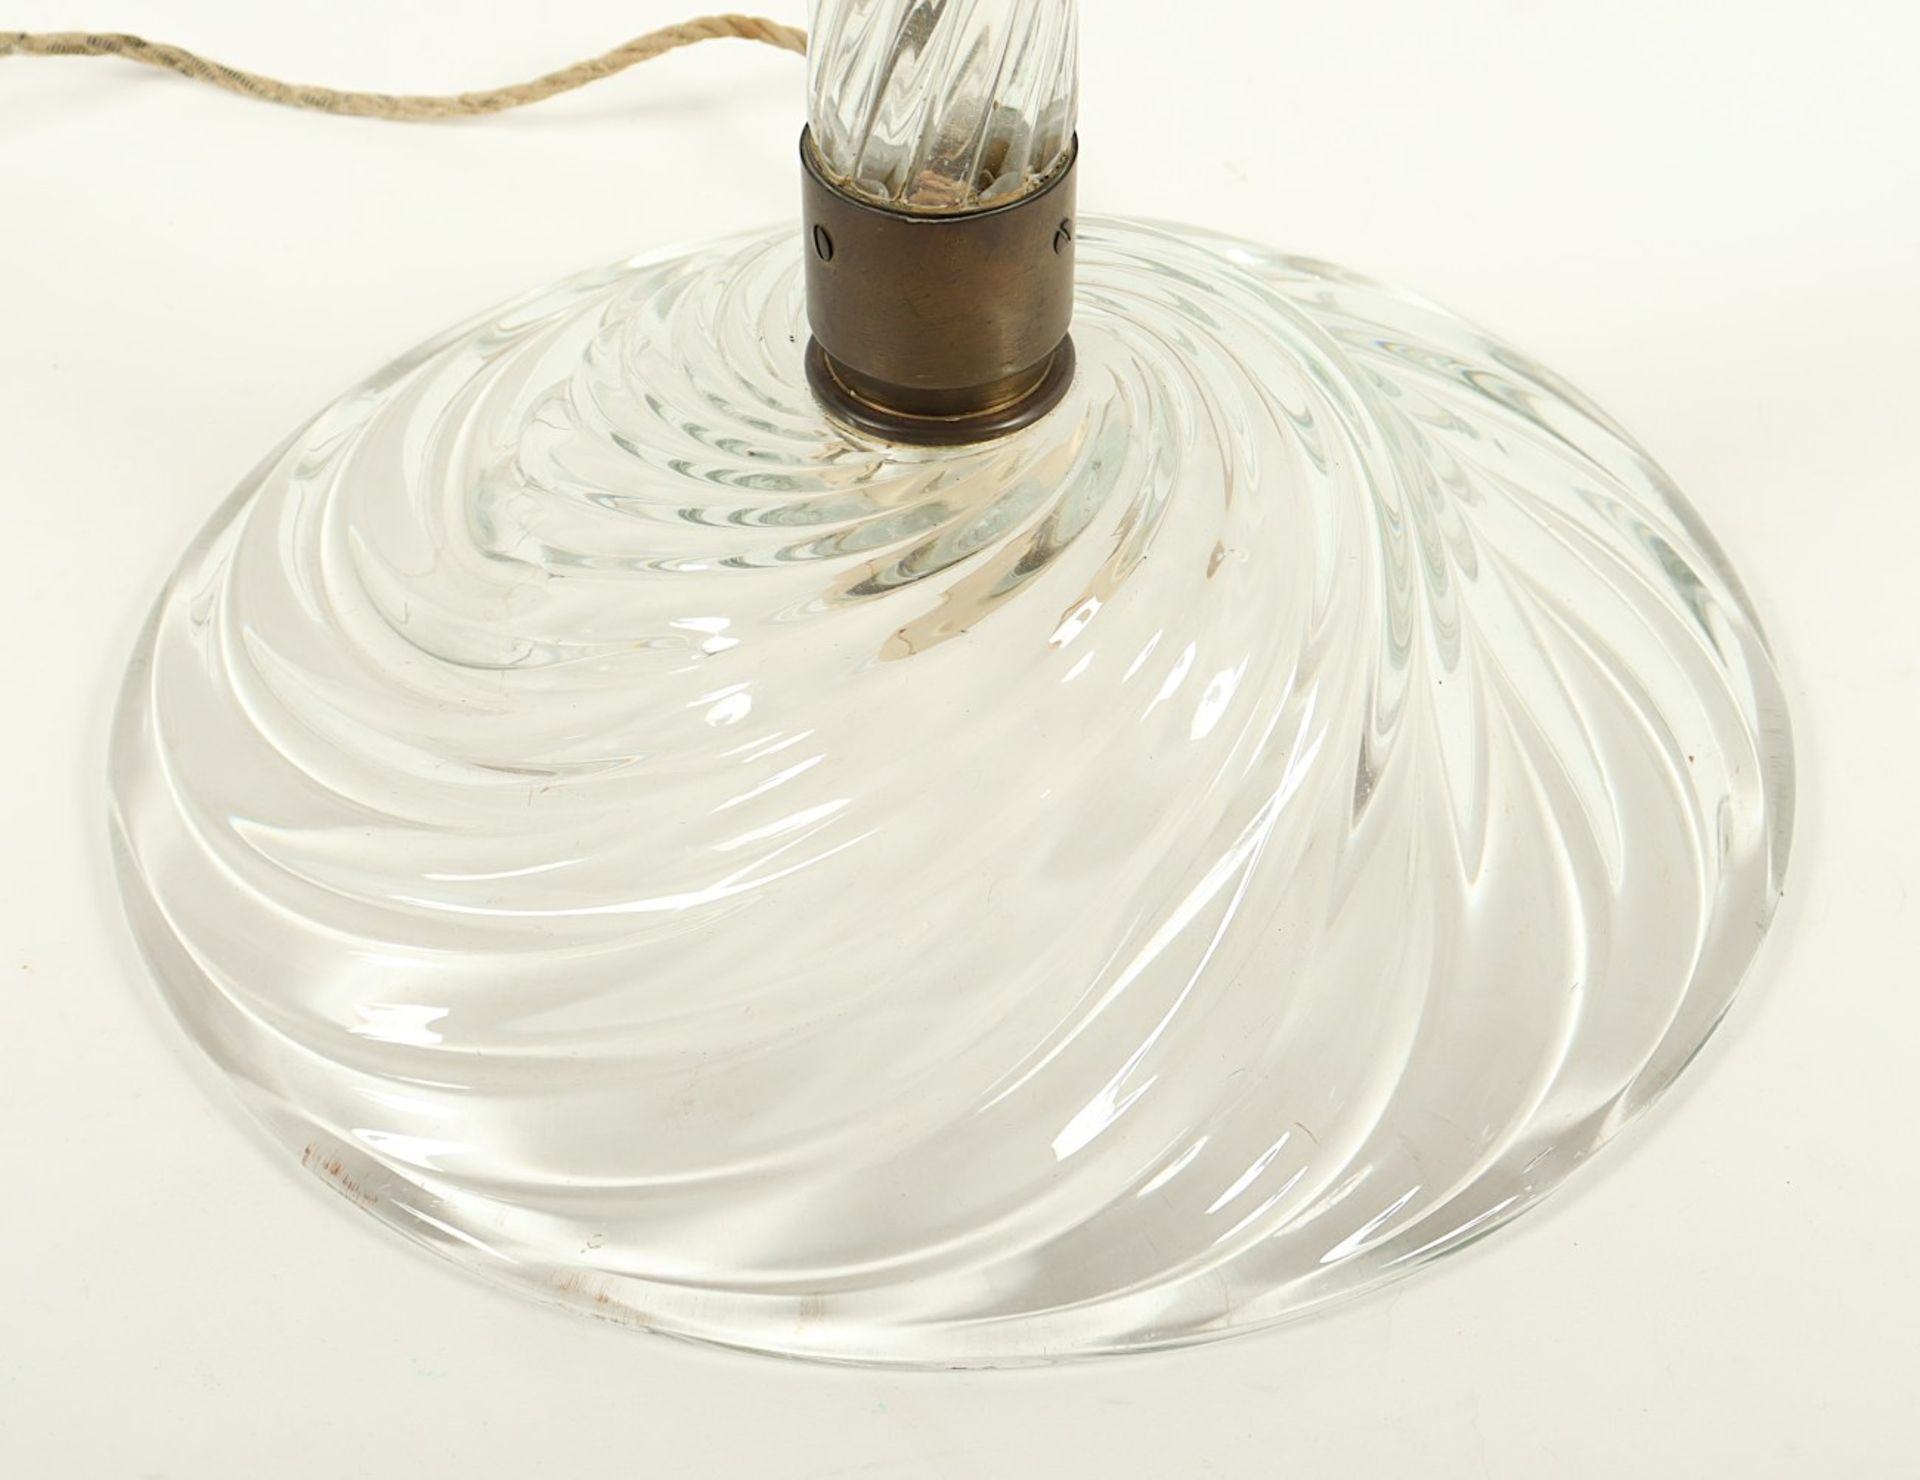 STEHLAMPE MODELL 502 "RIGATO TONDO", farbloses, spiralförmig gedrehtes Glas - Bild 4 aus 4